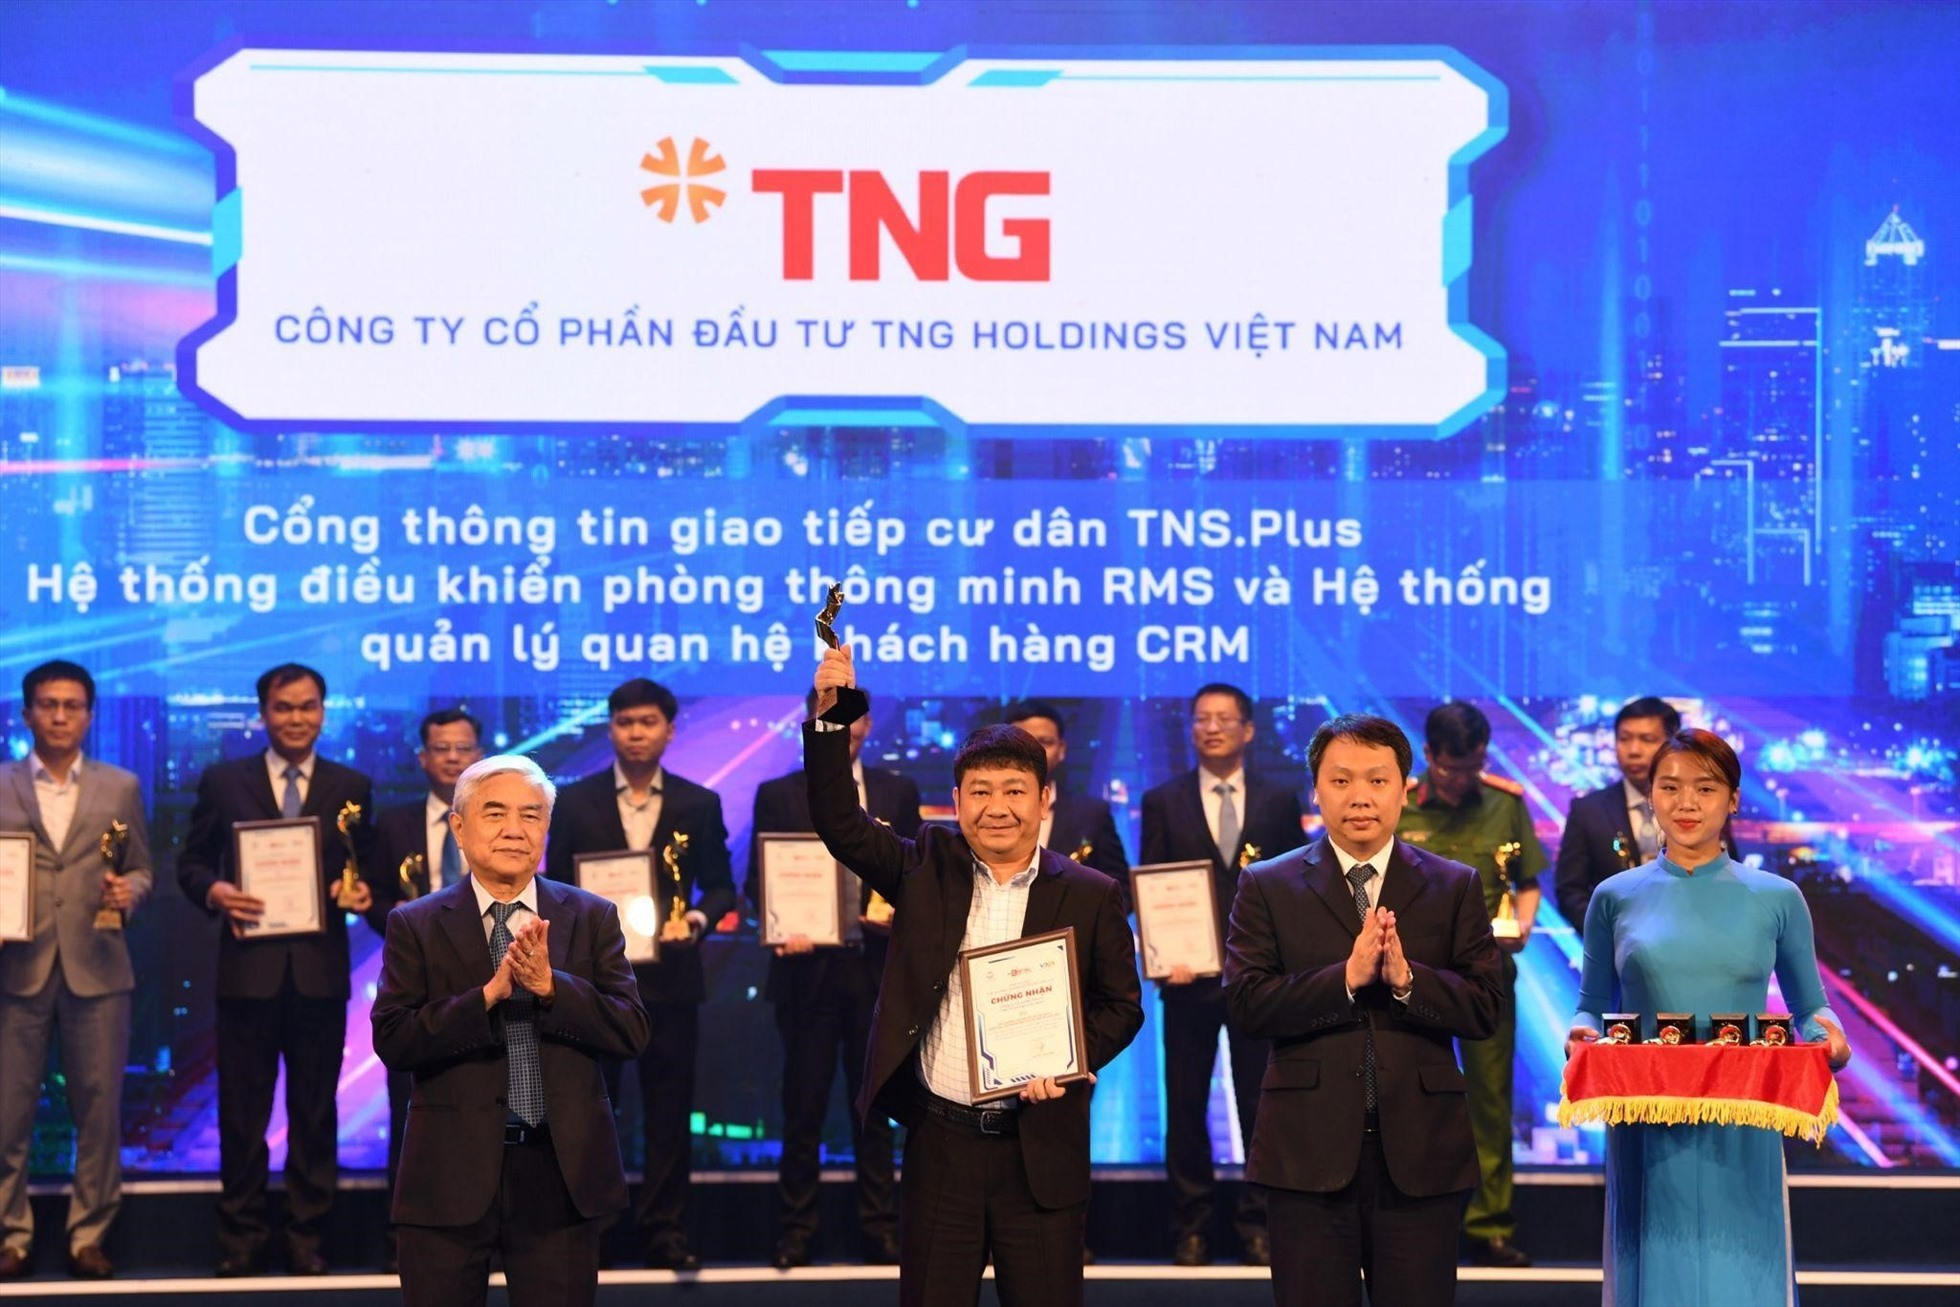 Ông Bùi Quốc Khánh - Giám đốc Công nghệ Tập đoàn TNG Holdings Vietnam nhận giải thưởng “Doanh nghiệp chuyển đổi số xuất sắc” năm 2022.